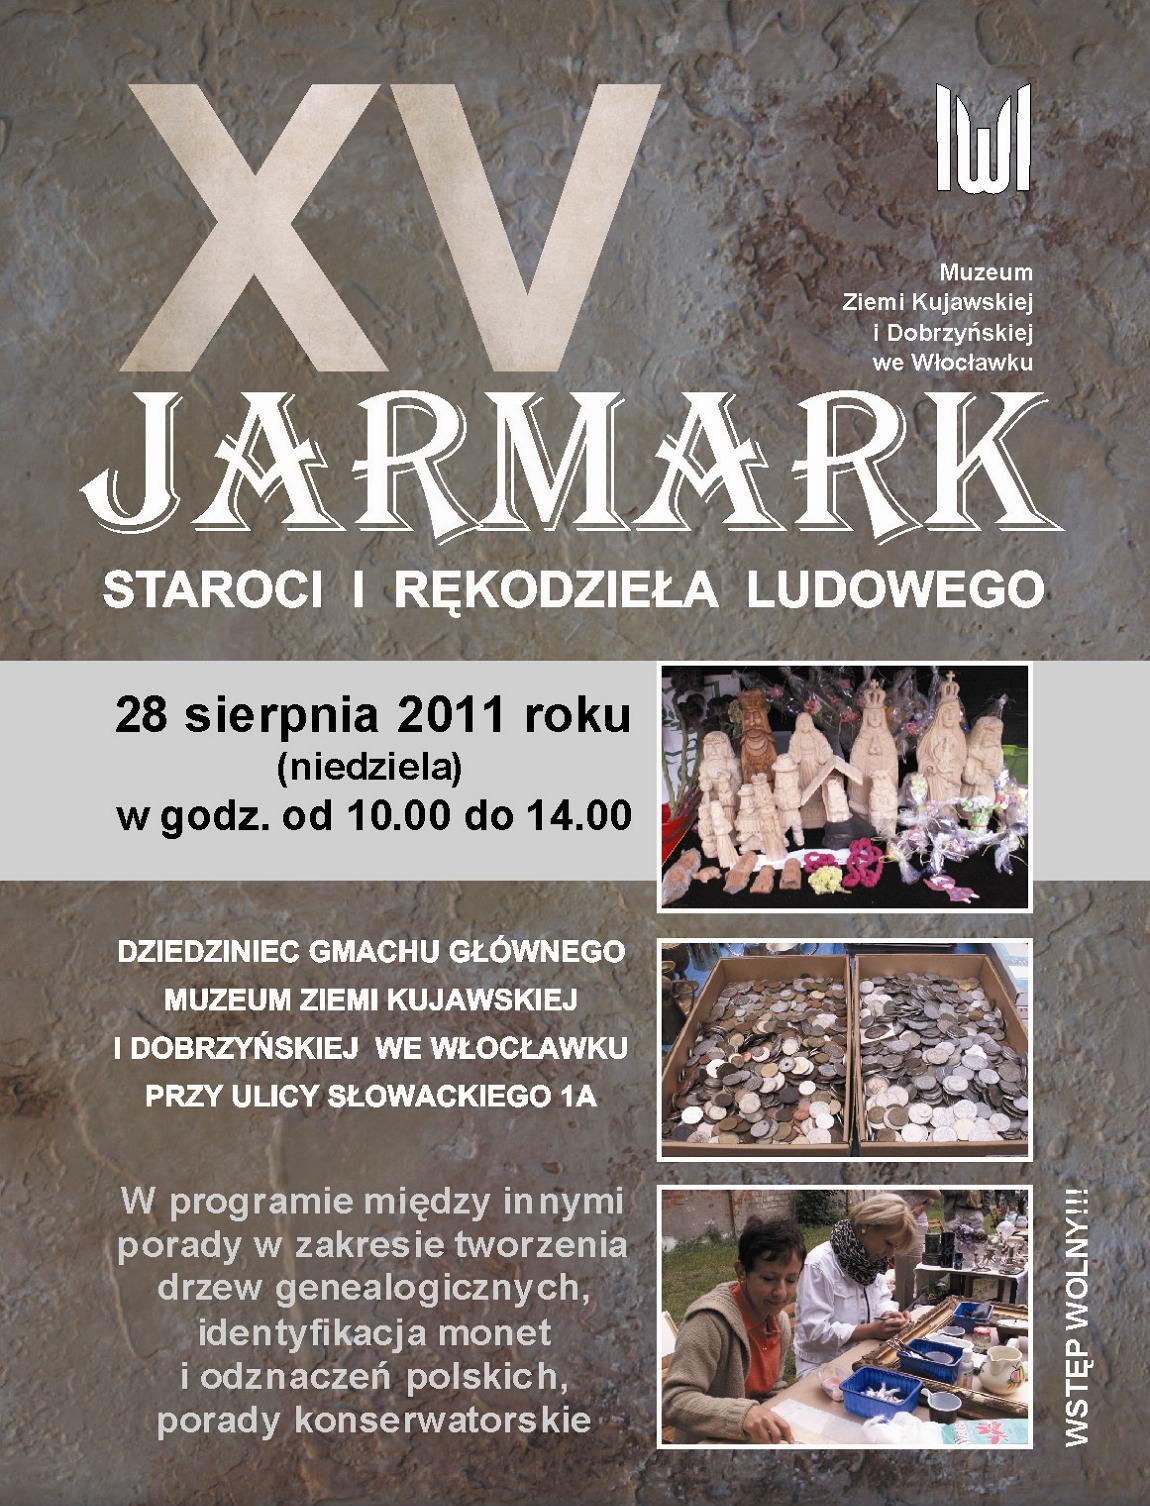 Plakat promujący Jarmark Staroci i Rękodzieła Ludowego (projekt M. Kolanowska)